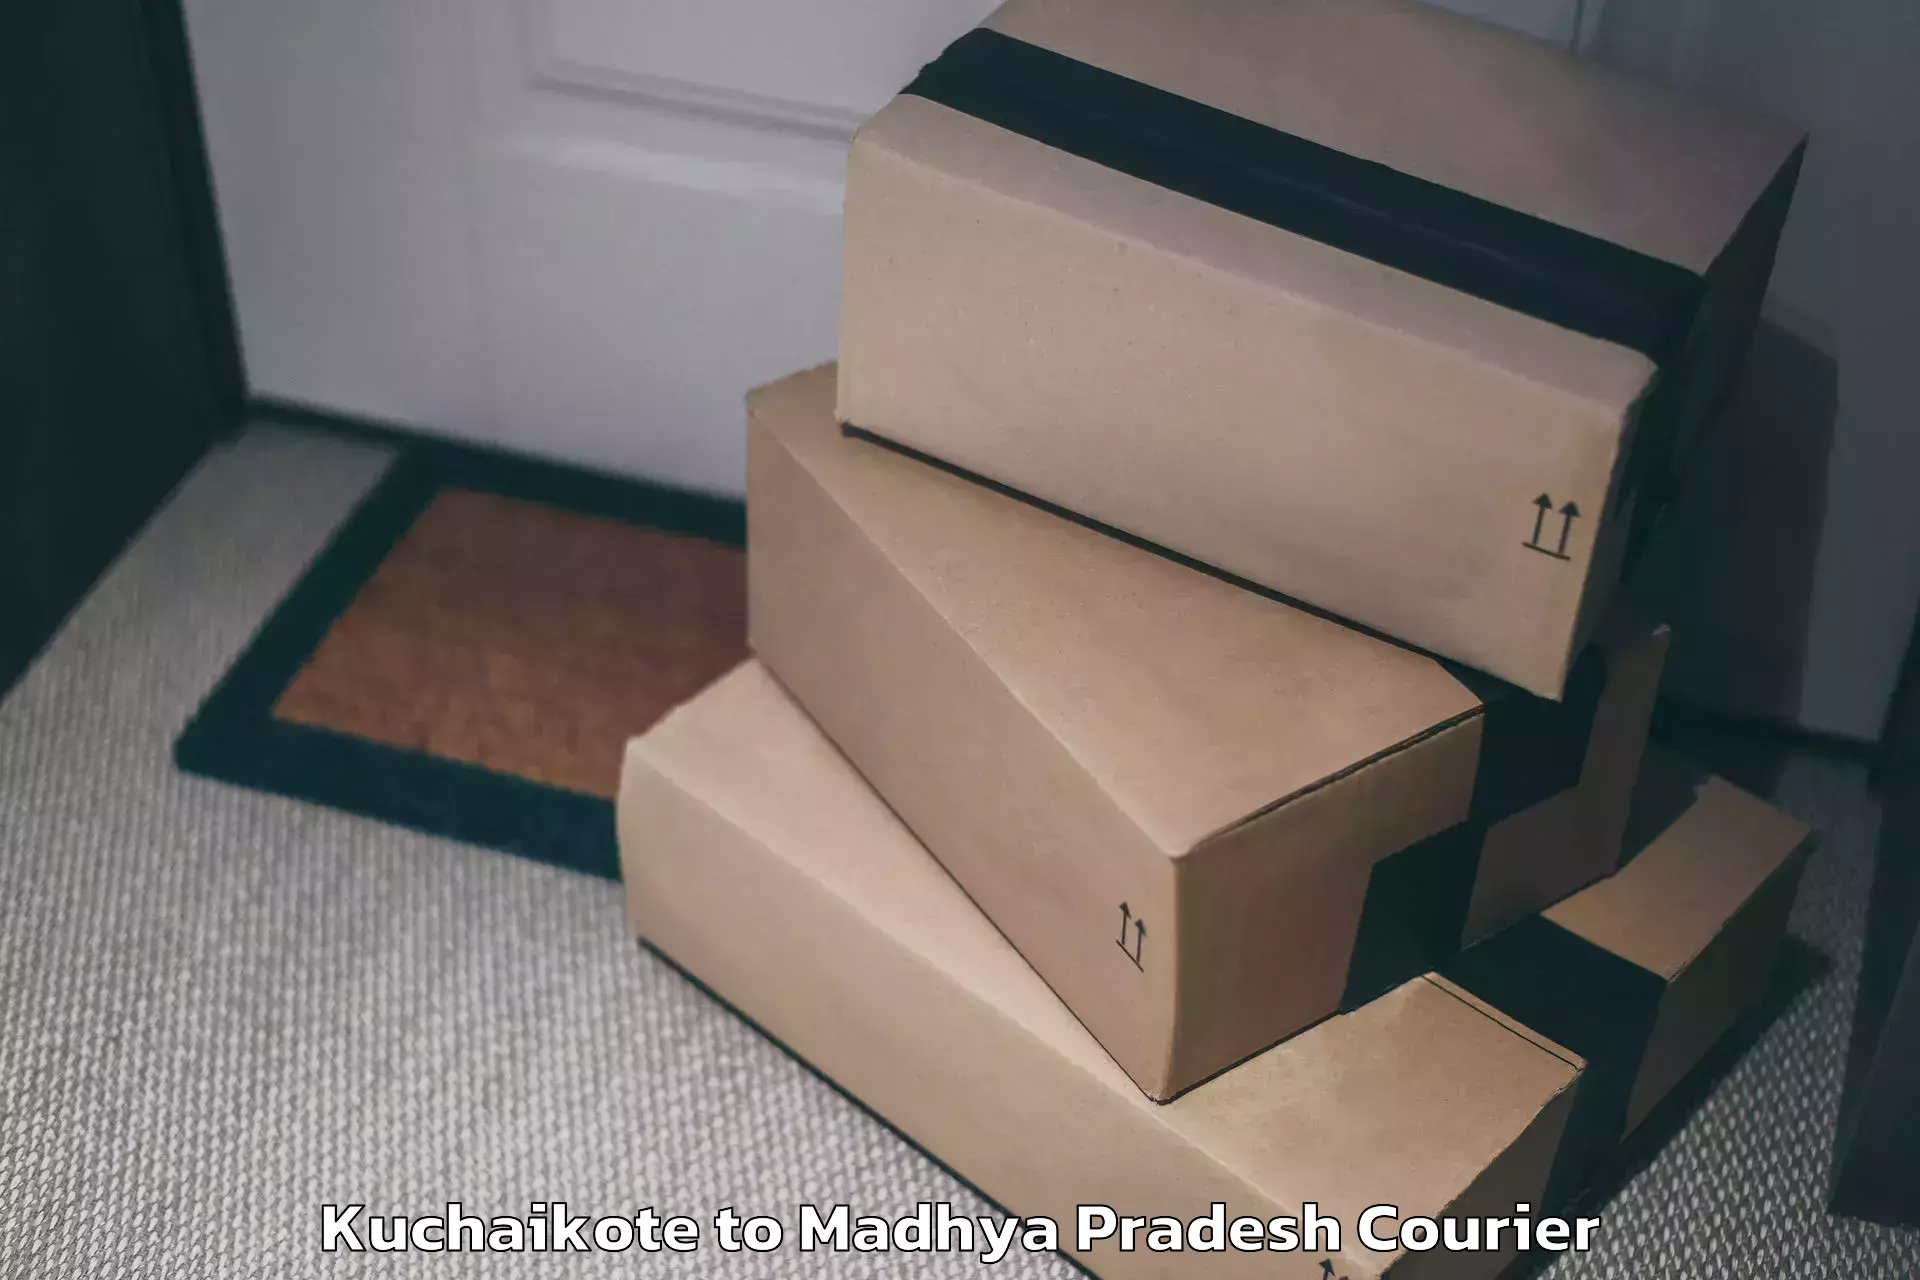 Luggage transport deals Kuchaikote to Madhya Pradesh